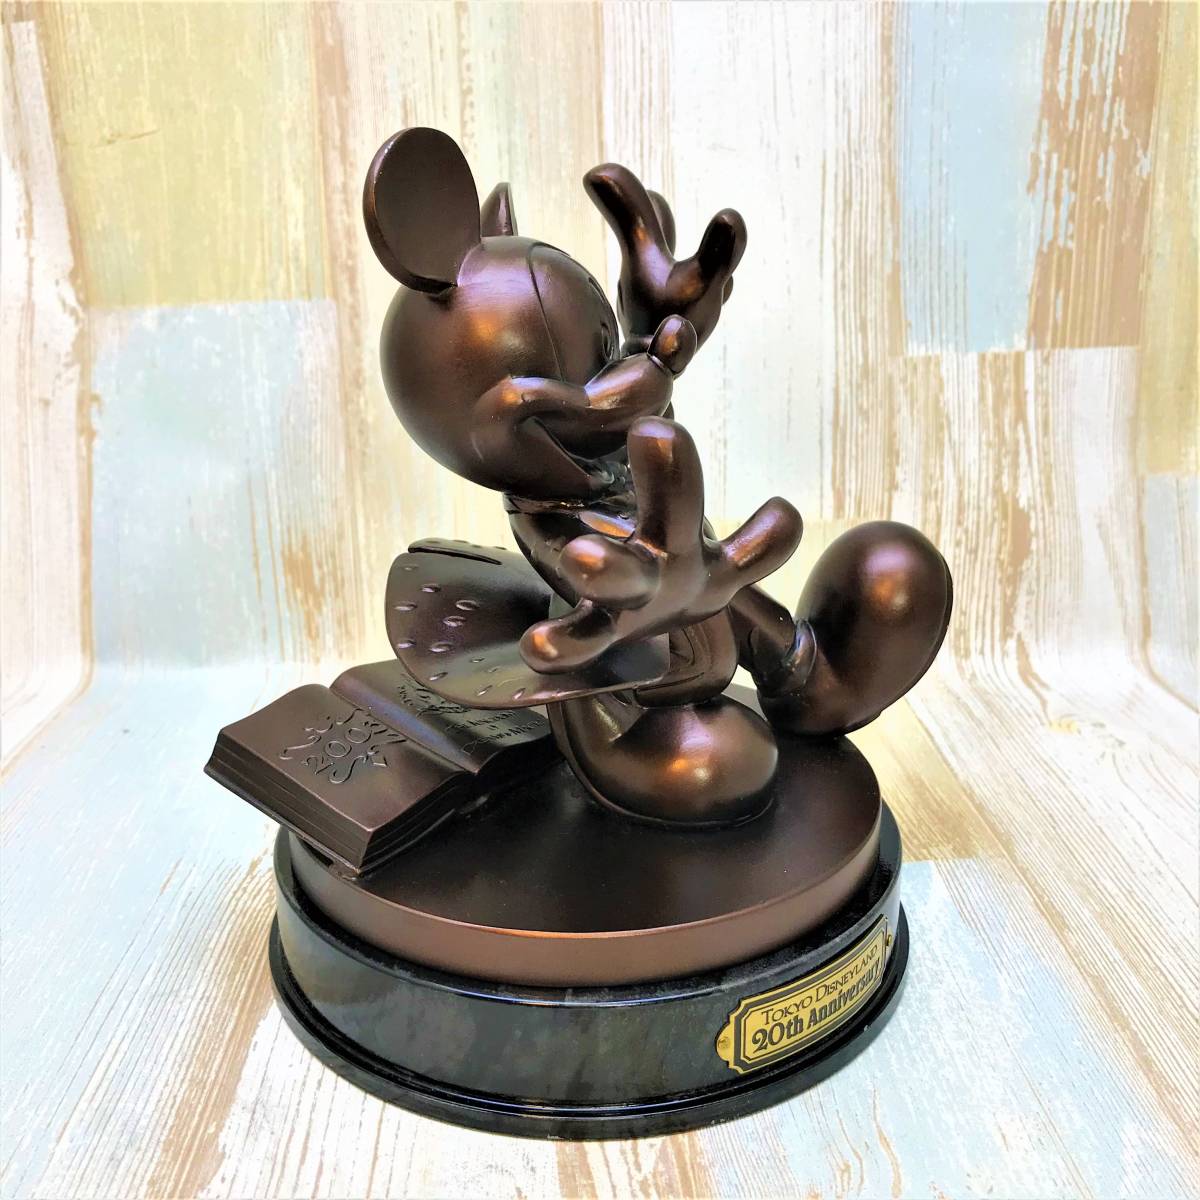  ограничение 1000 body очень редкий * Tokyo Disney Land 20 anniversary commemoration Mickey Mouse bronze изображение TDL 20th ANNIVERSARY фигурка *Disney металлический 